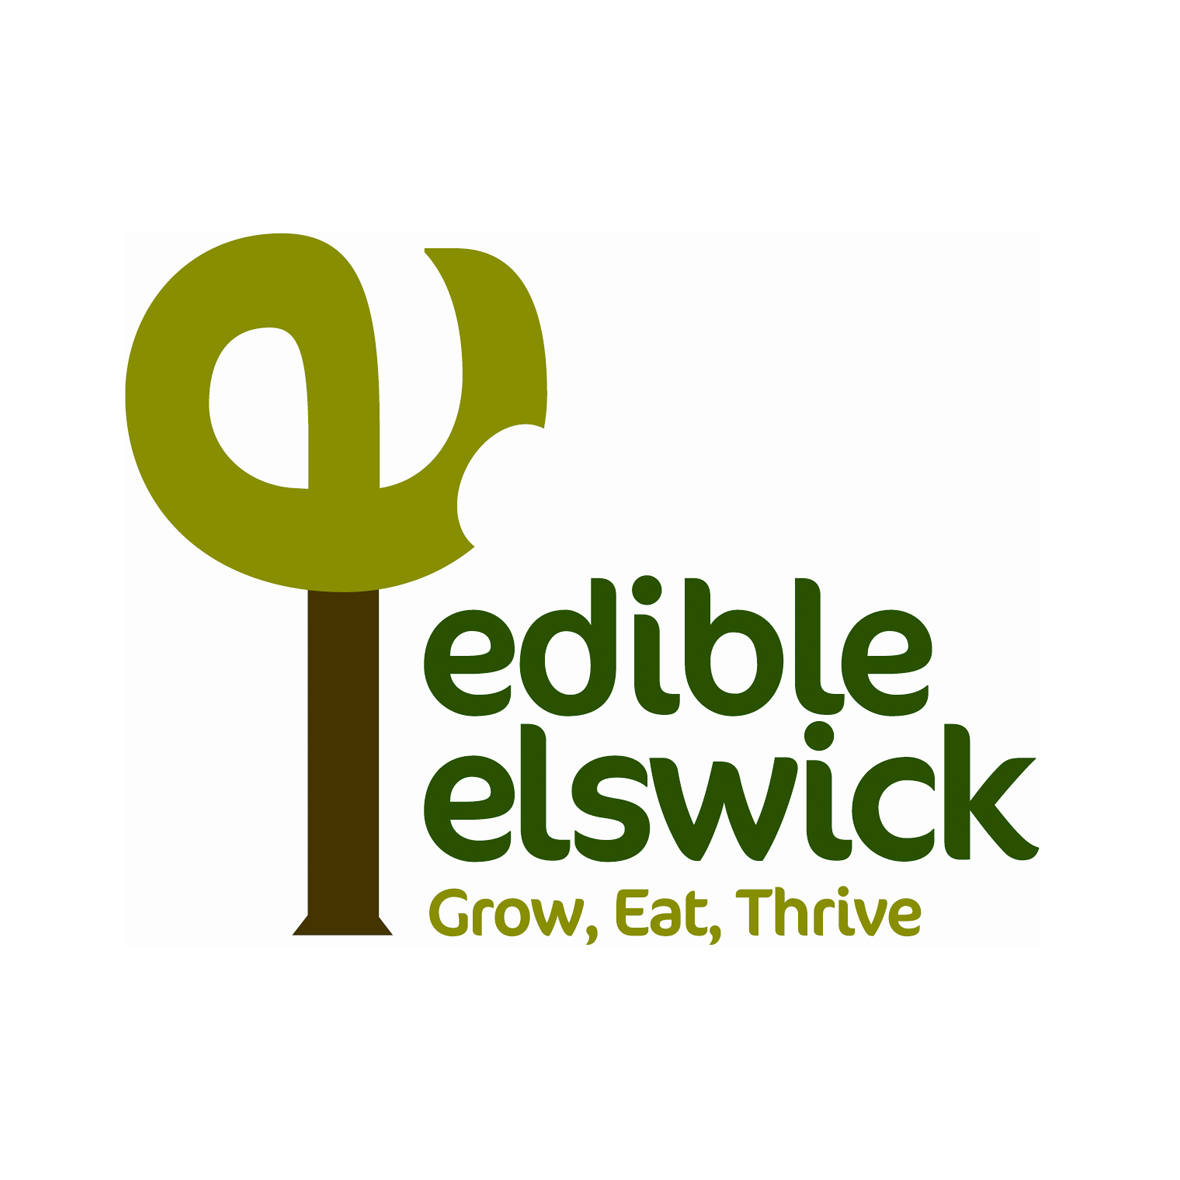 EDIBLE-ELSWICK.png